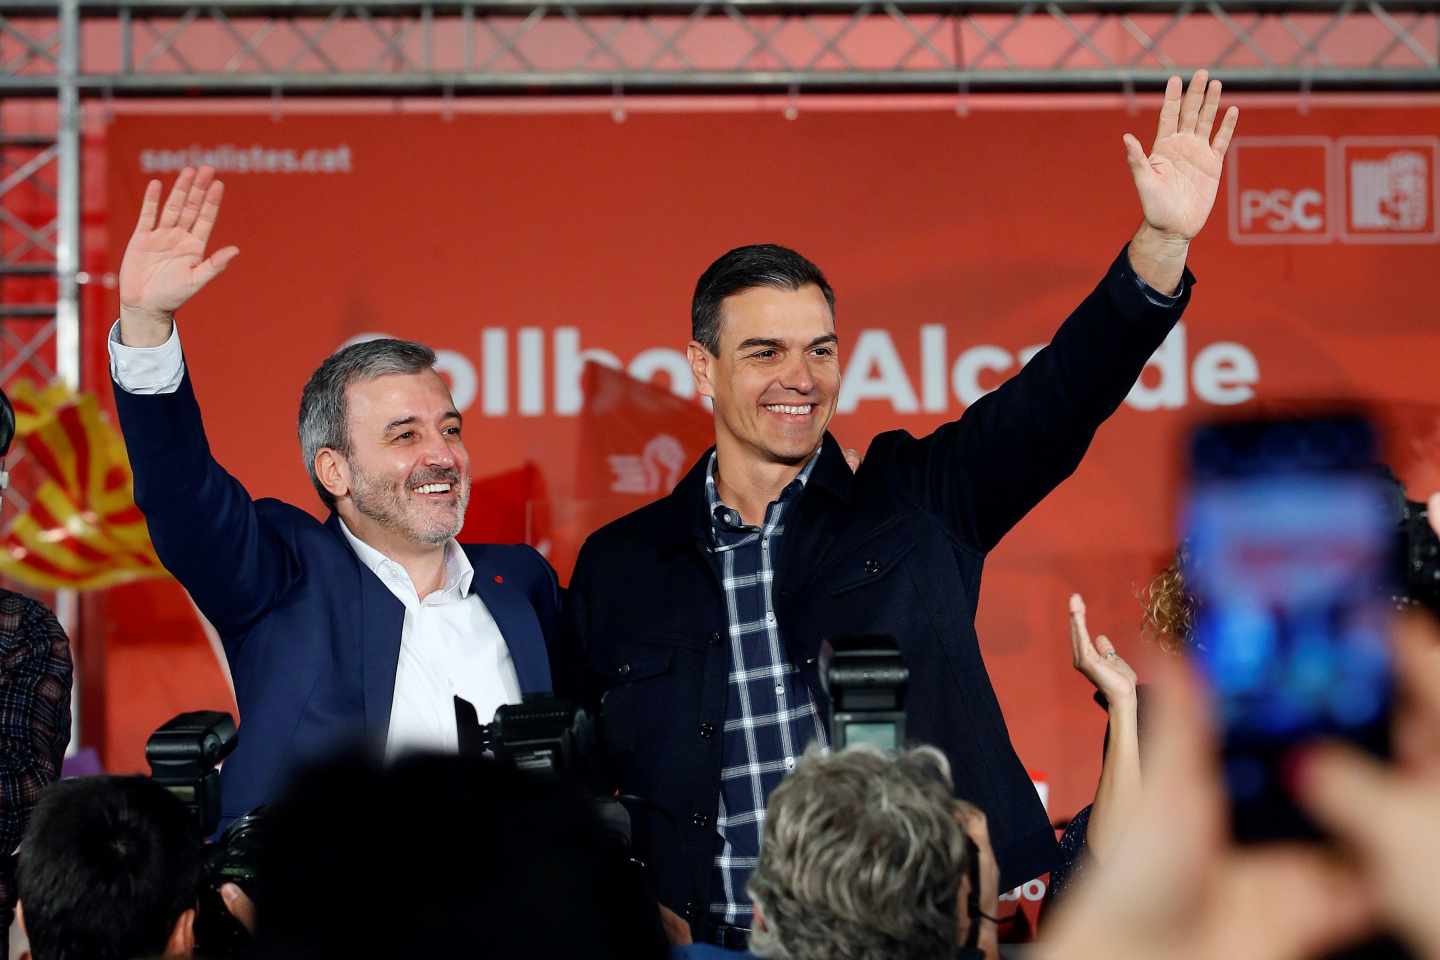 Pedro Sánchez avisa a Rivera y Casado: "Vamos a gobernar hasta 2020"